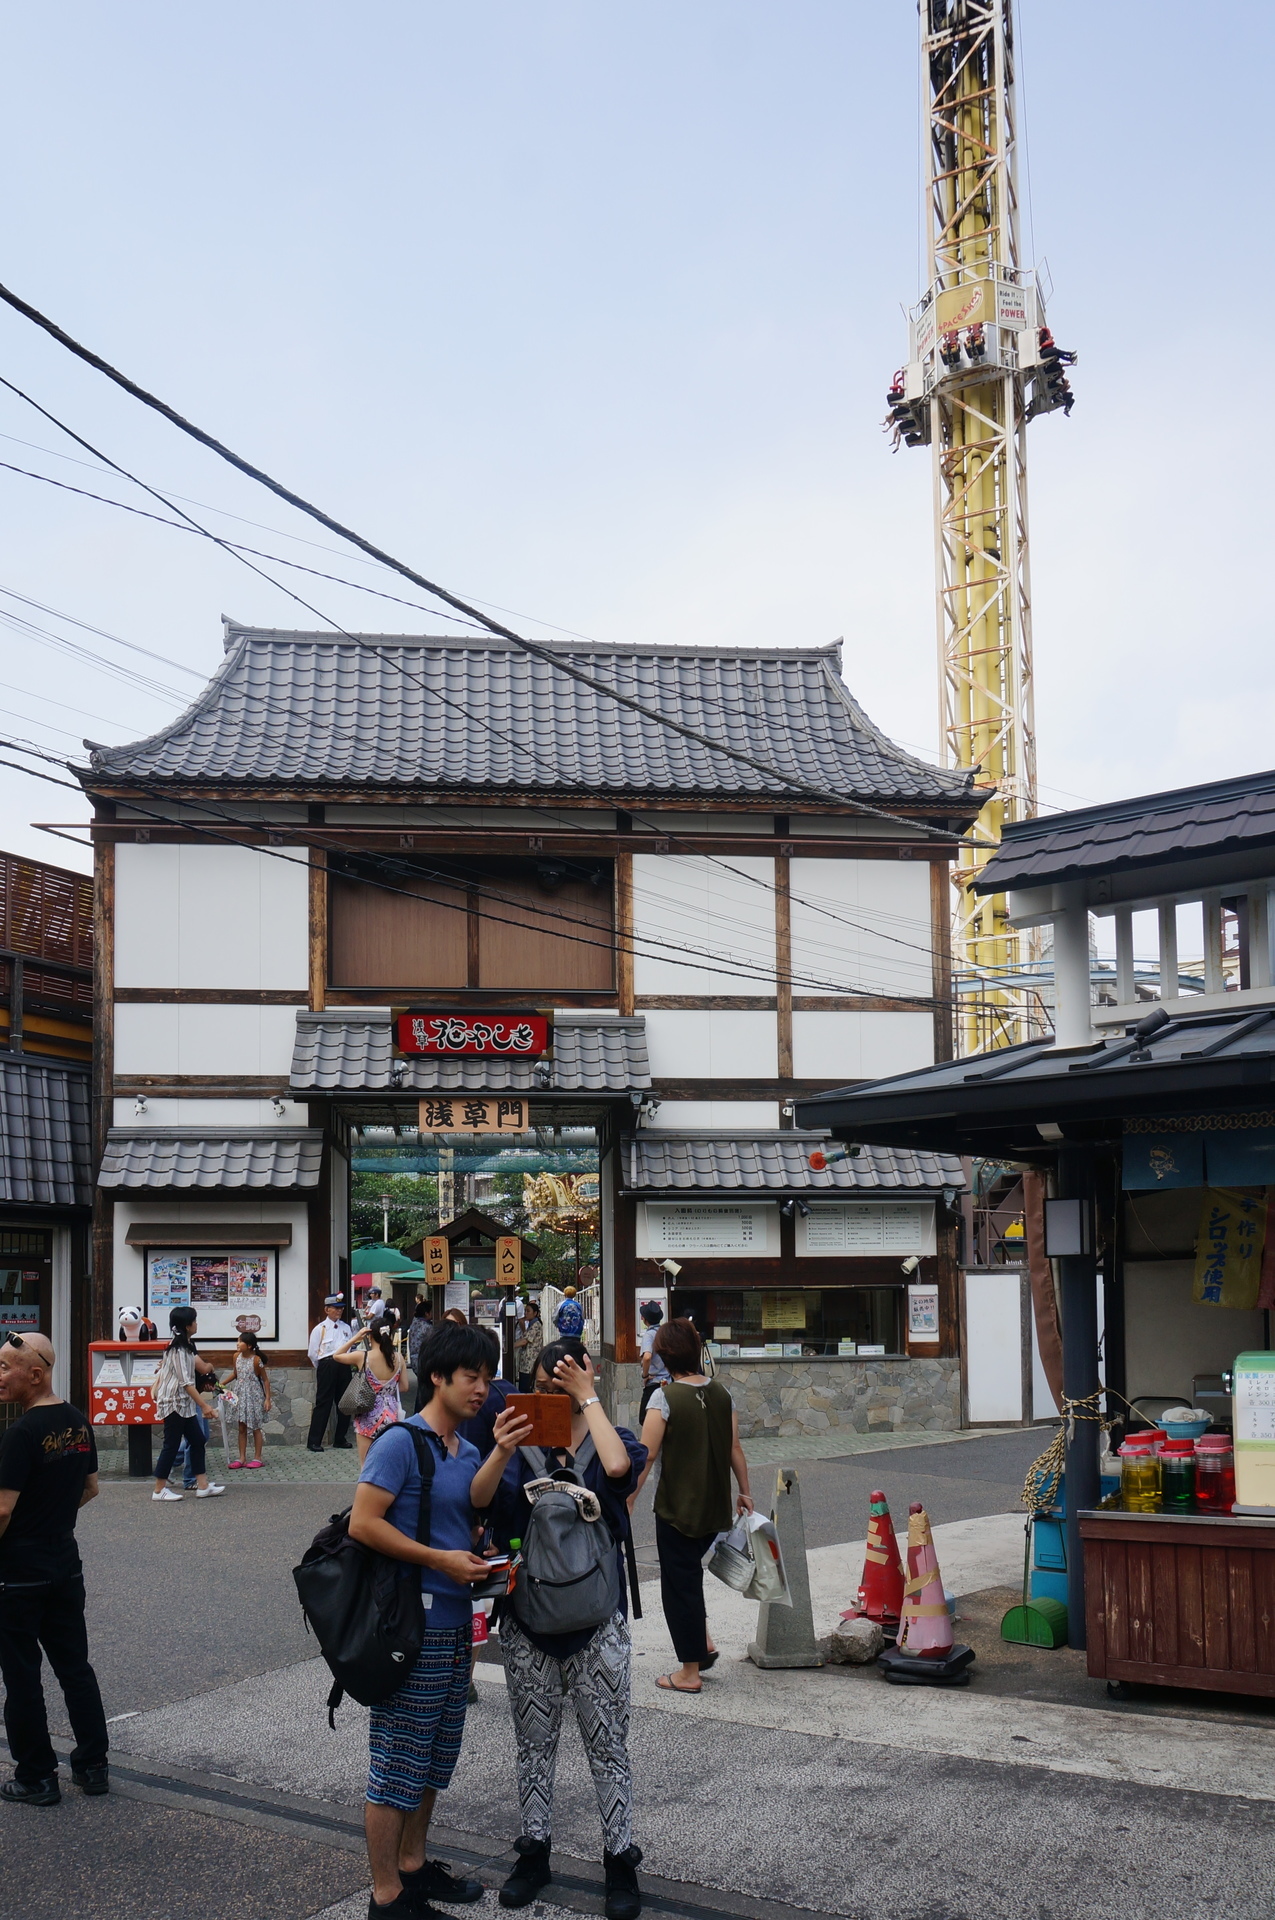 日本最古の遊園地 花やしき に初めて入った Ogu S Blog かずさ便り ちょっとだけpcの話も